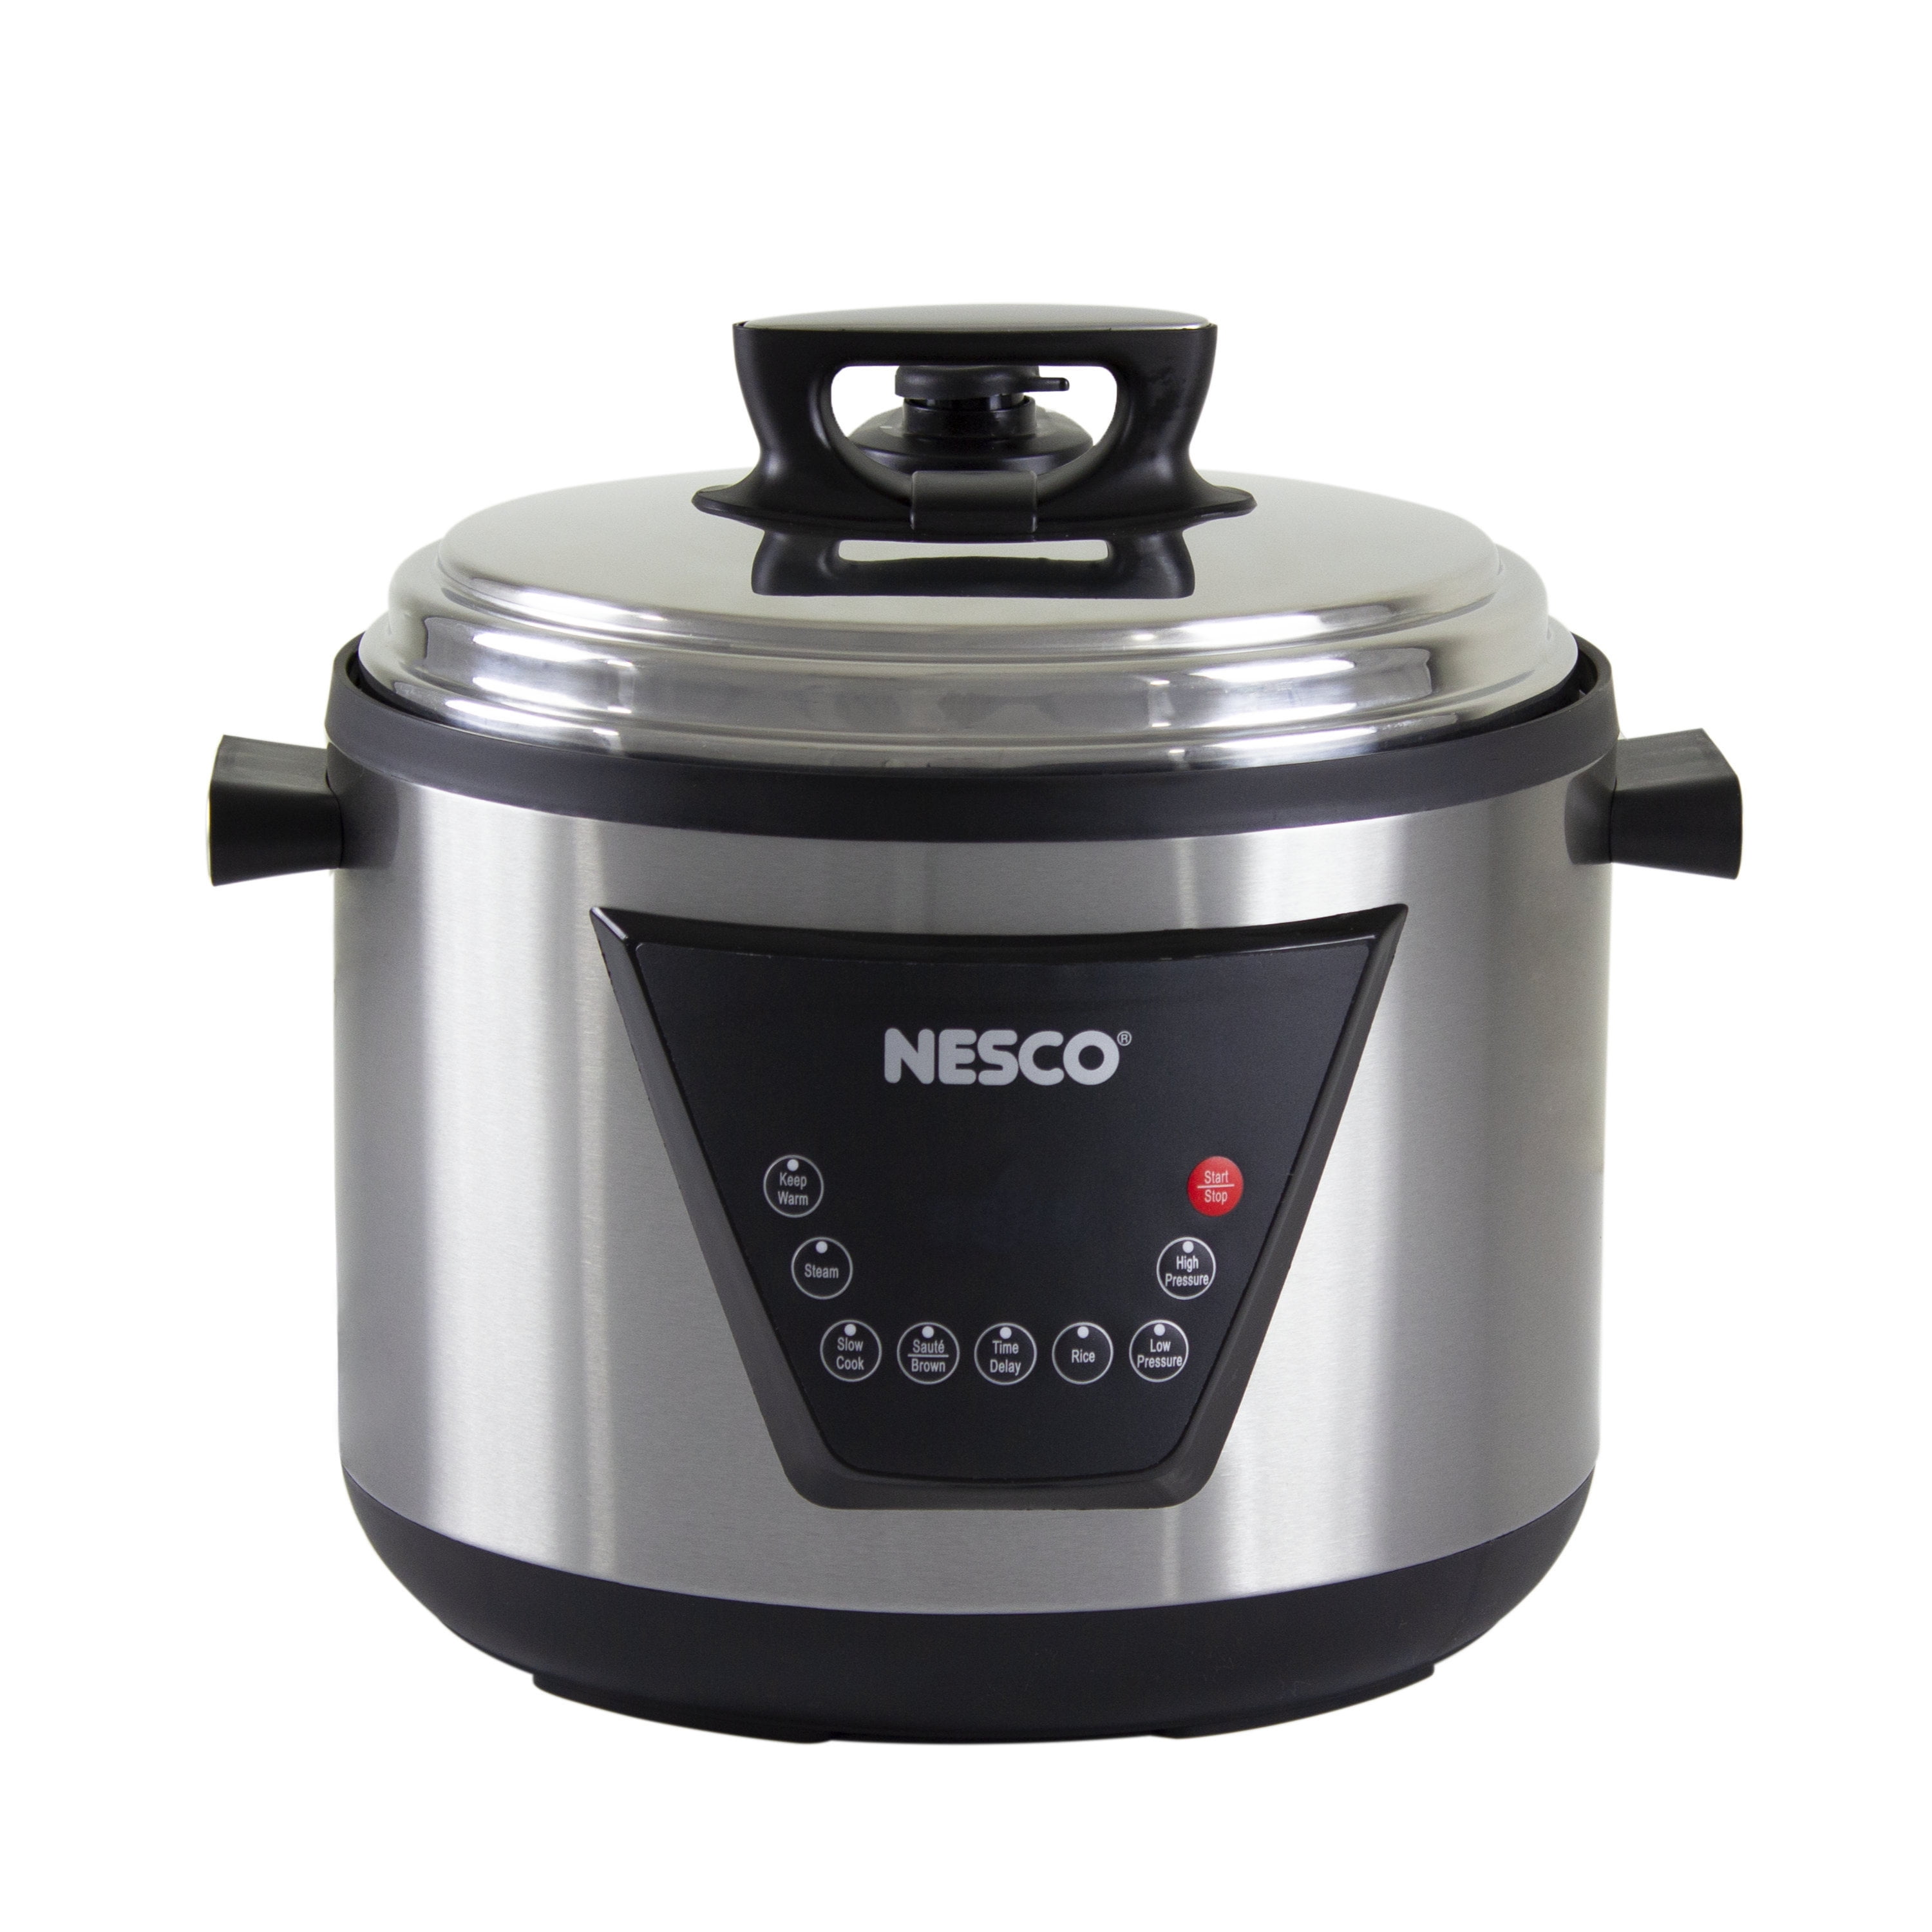 Nesco 11 Quart Multi-Function Pressure Cooker - Stainless Steel